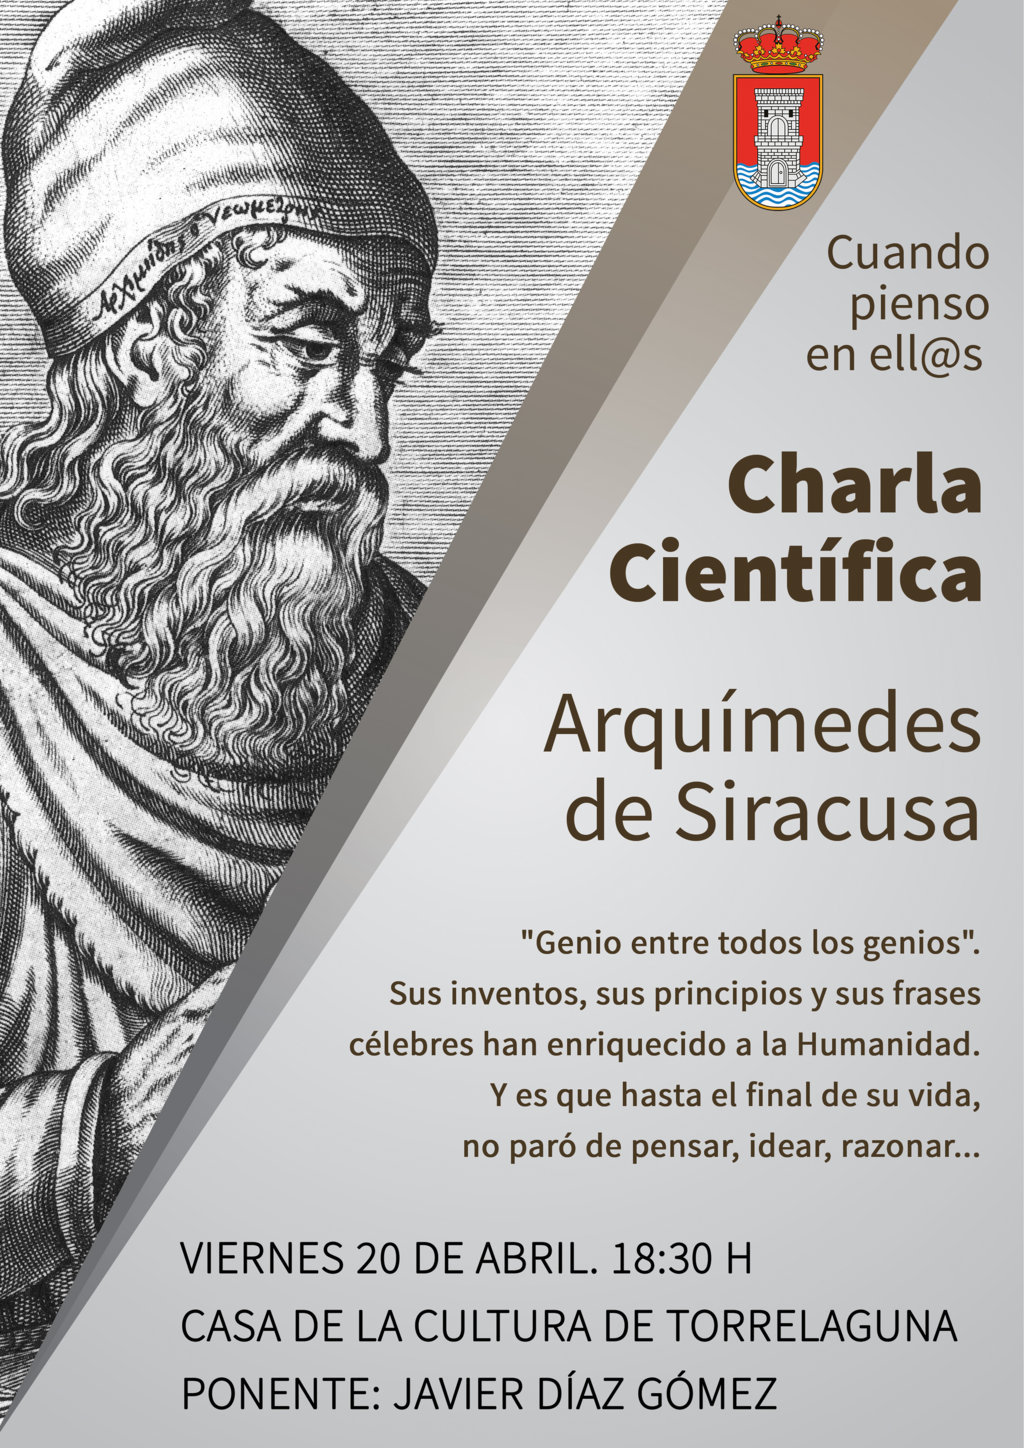 Viernes 20: Charla científica sobre Arquímedes | Ayuntamiento de Torrelaguna